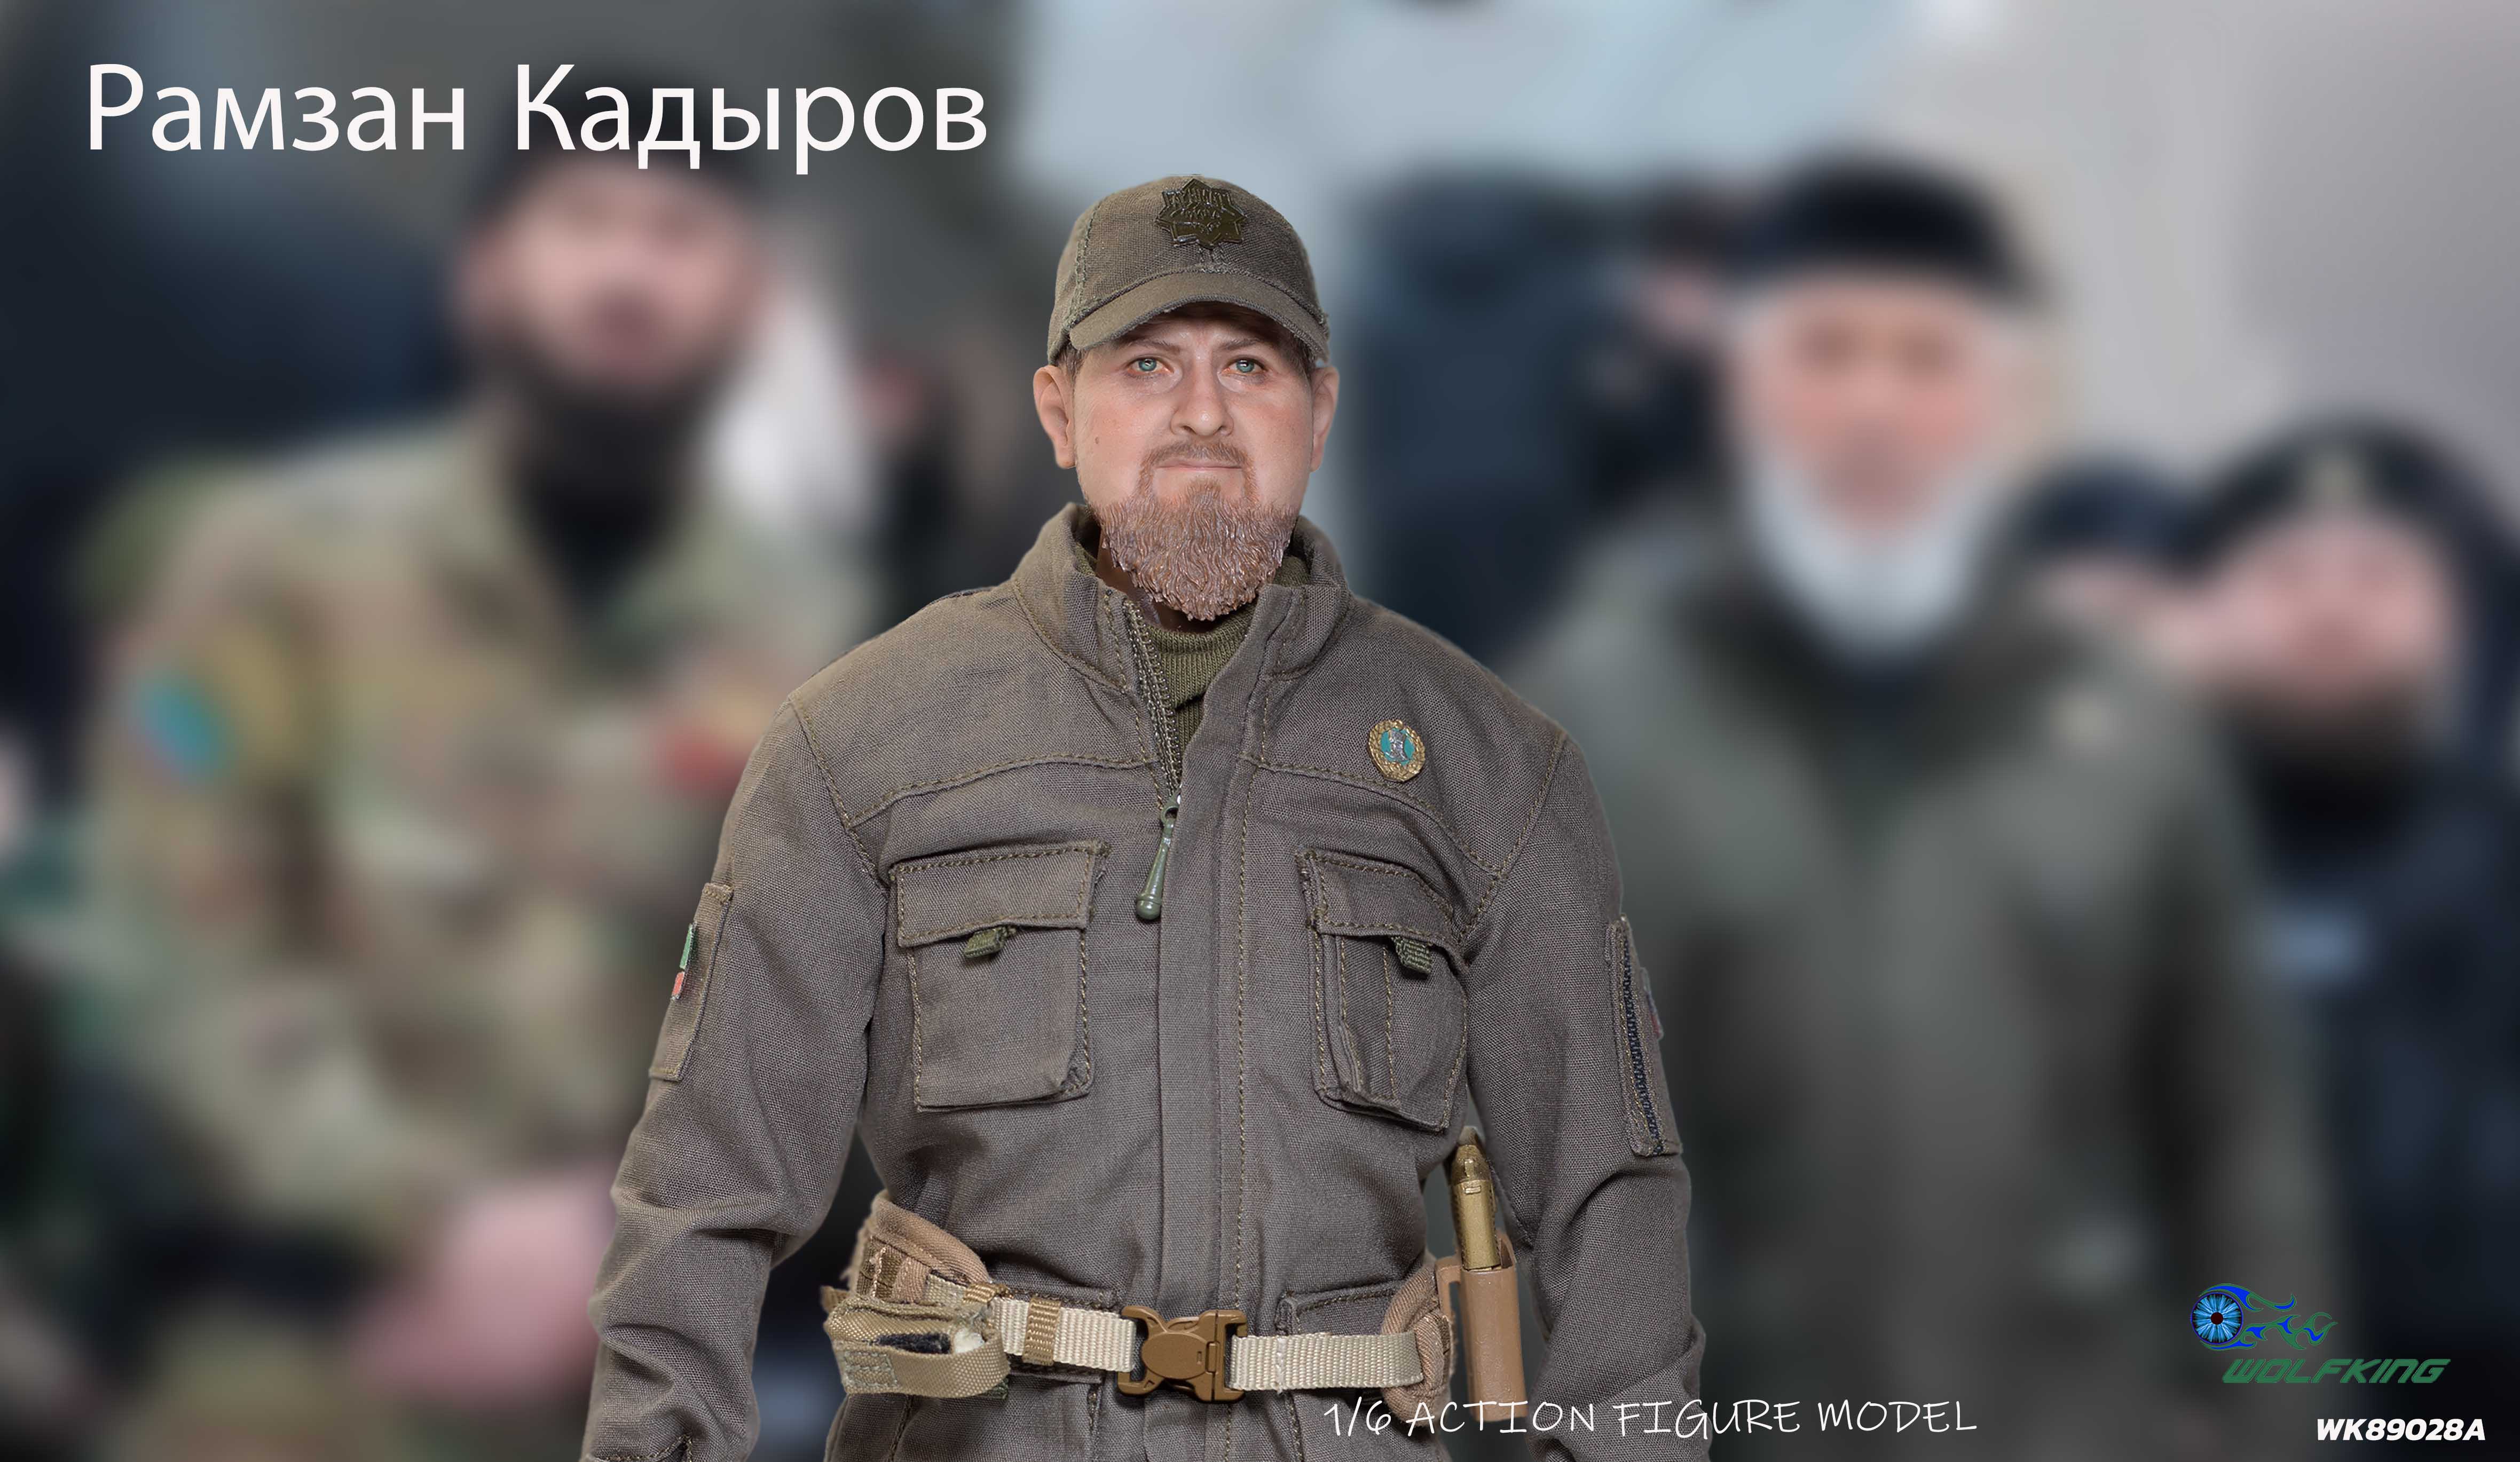 Kadyrov - President of Chechnya